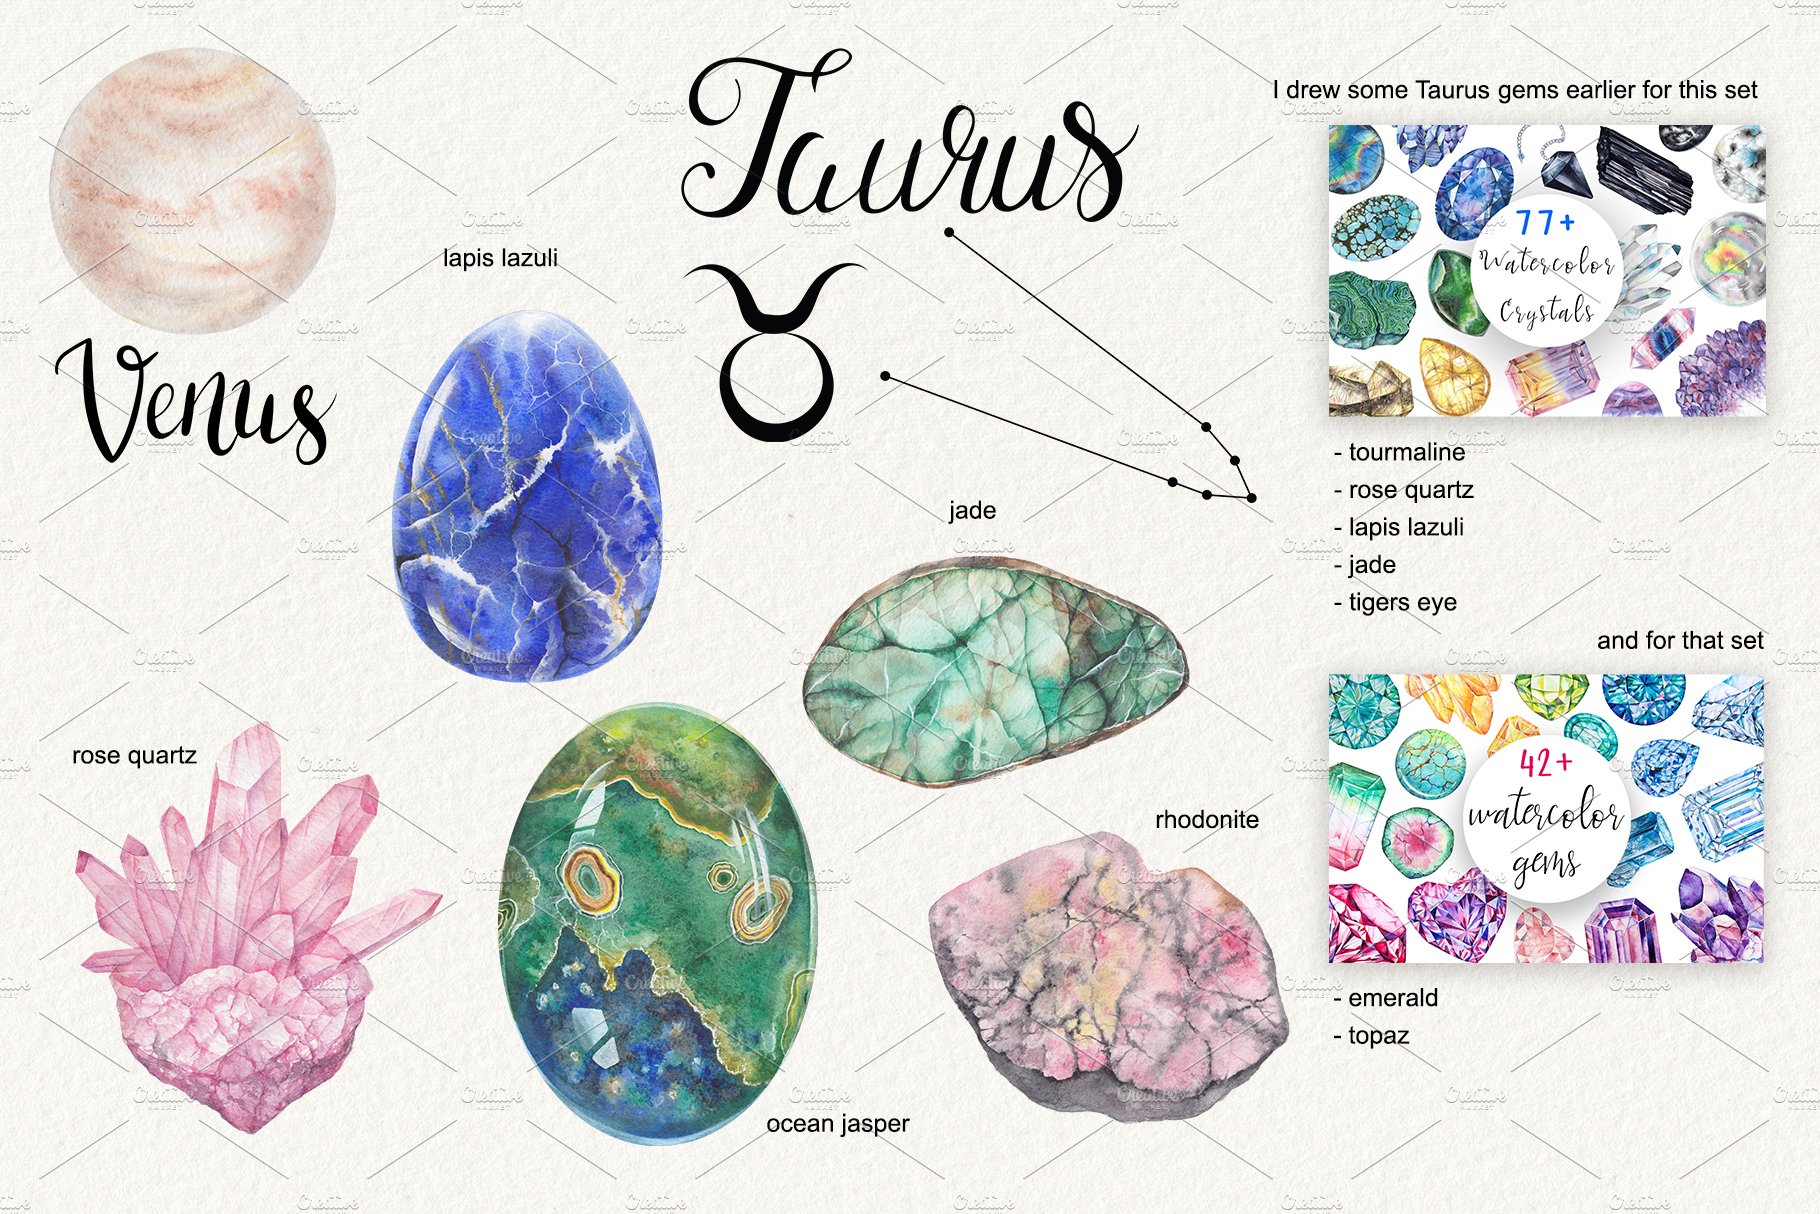 Some gradient stones for Taurus.